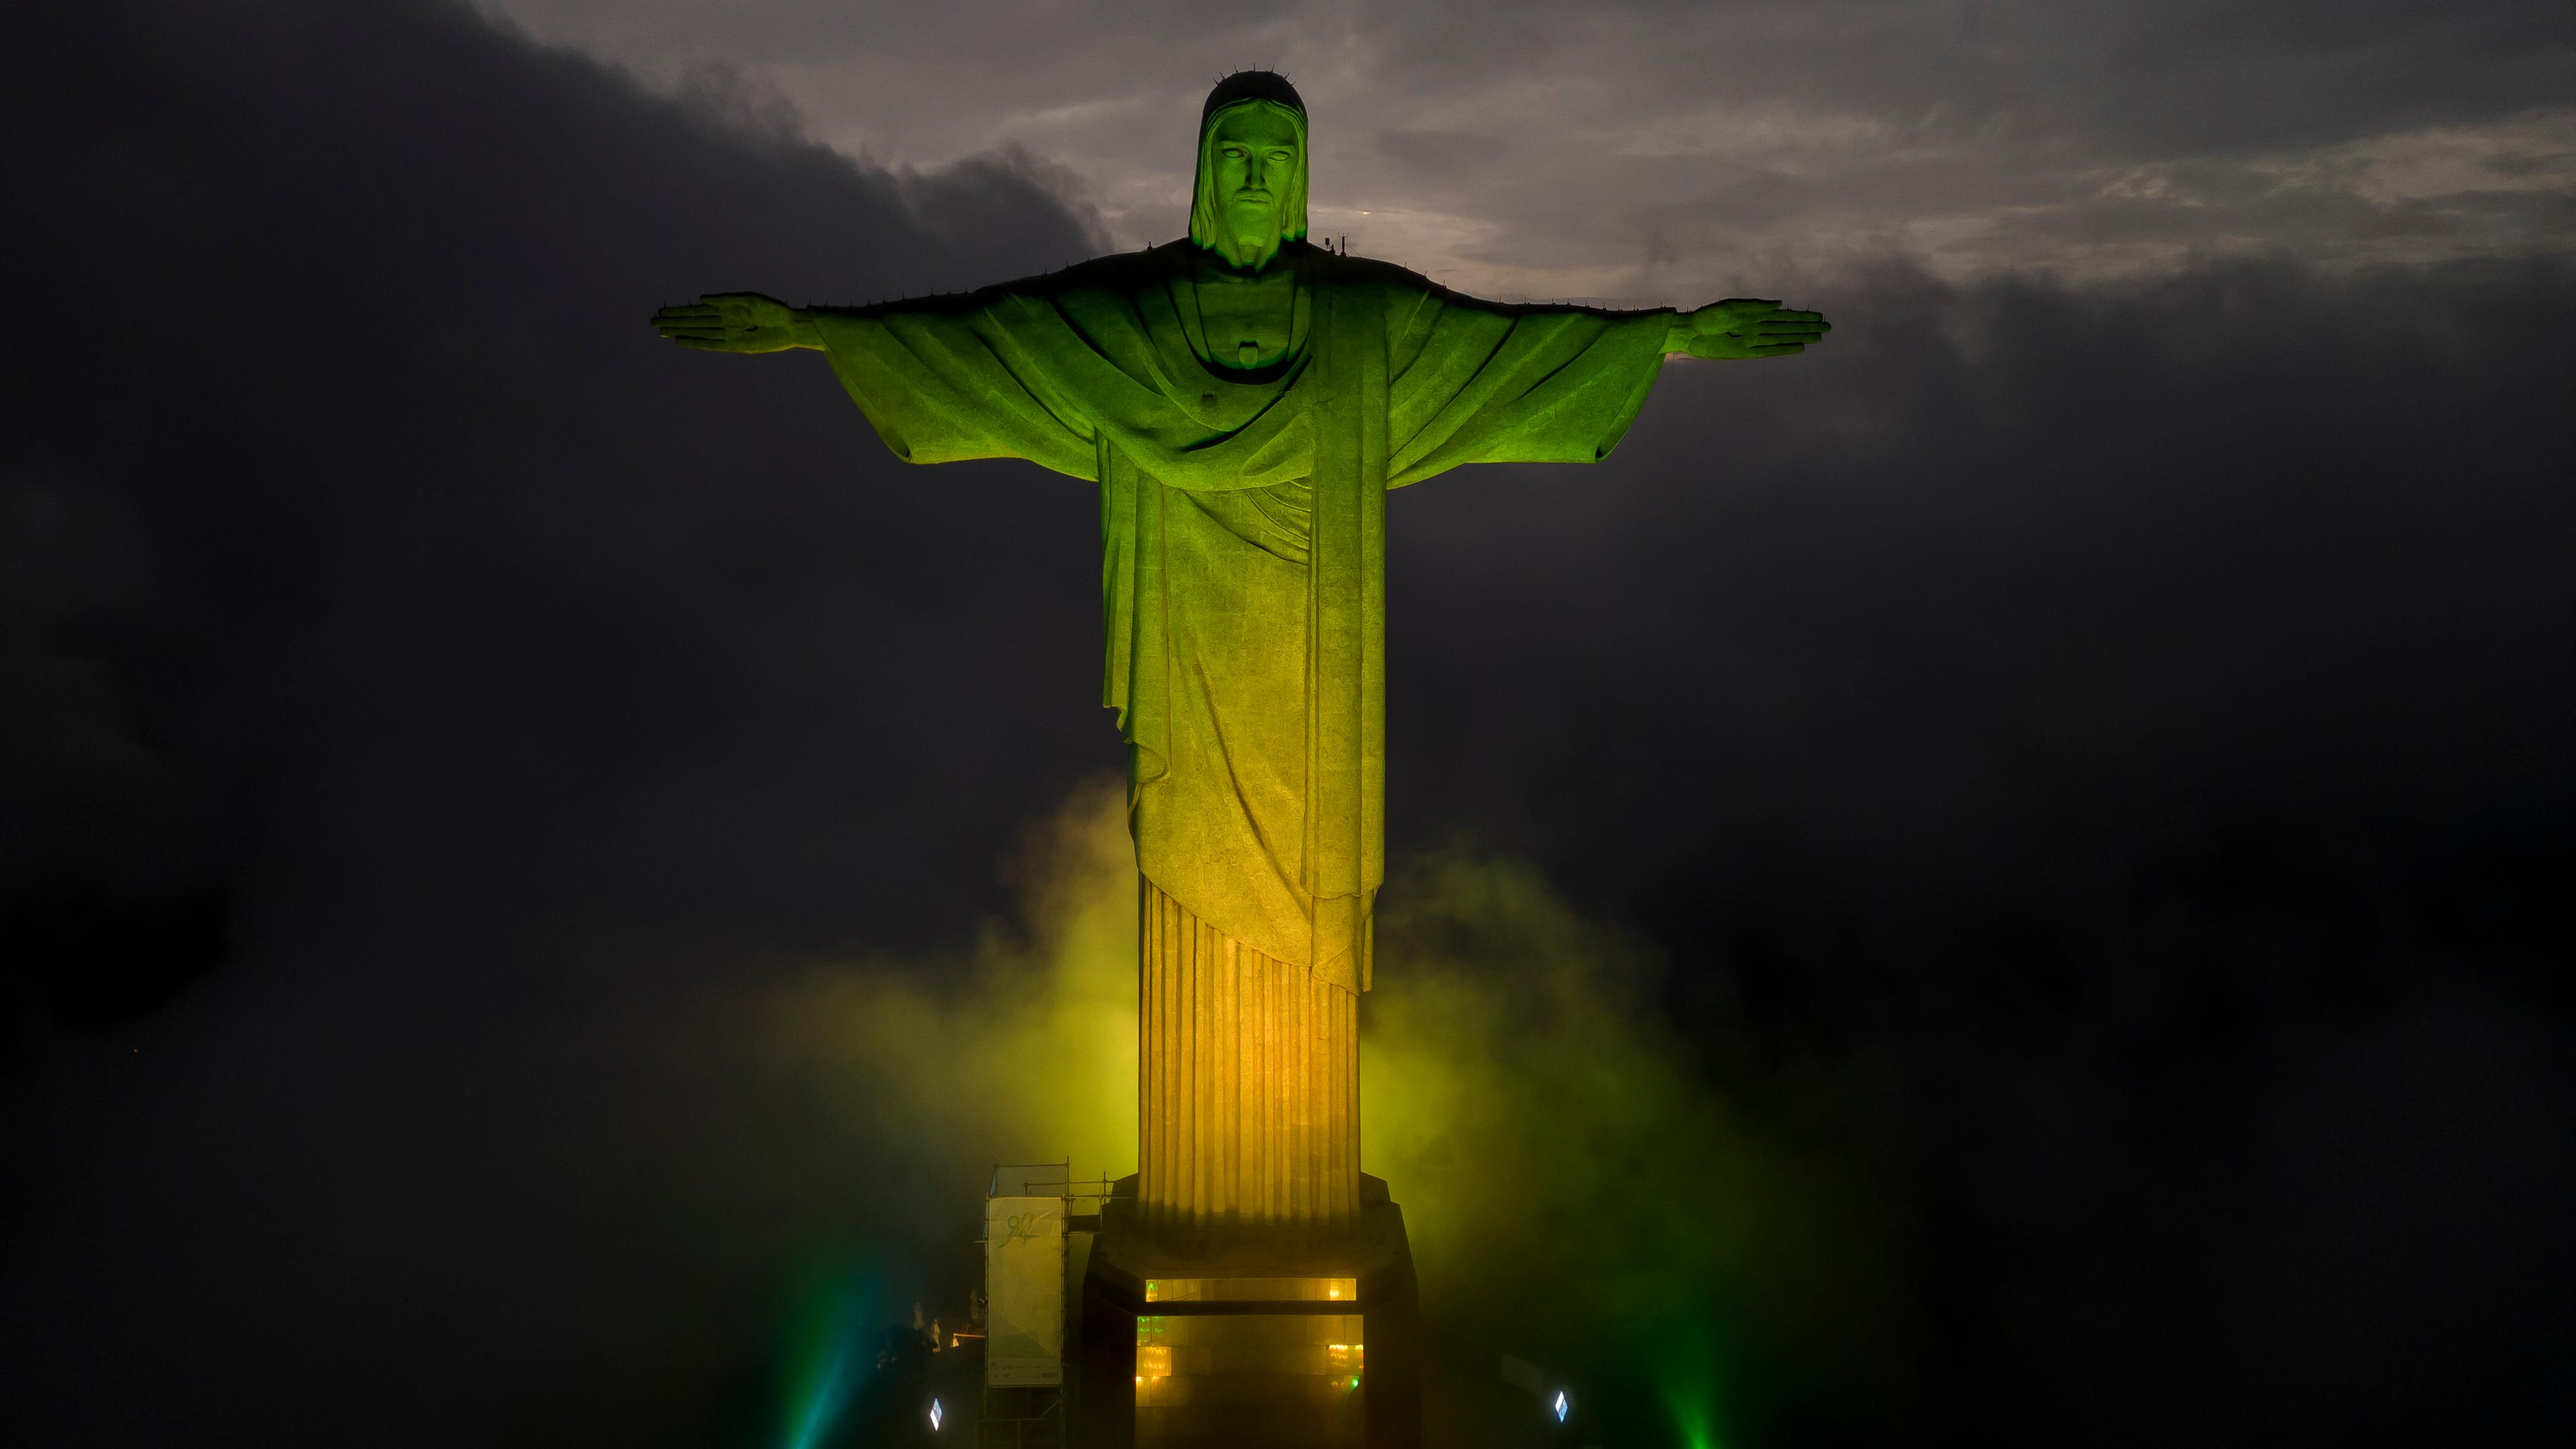 Christus-Statue in Rio de Janeiro wird in den Farben der brasilianischen Nationalflagge beleuchtet, um die verstorbene Fußballlegende Pele zu ehren